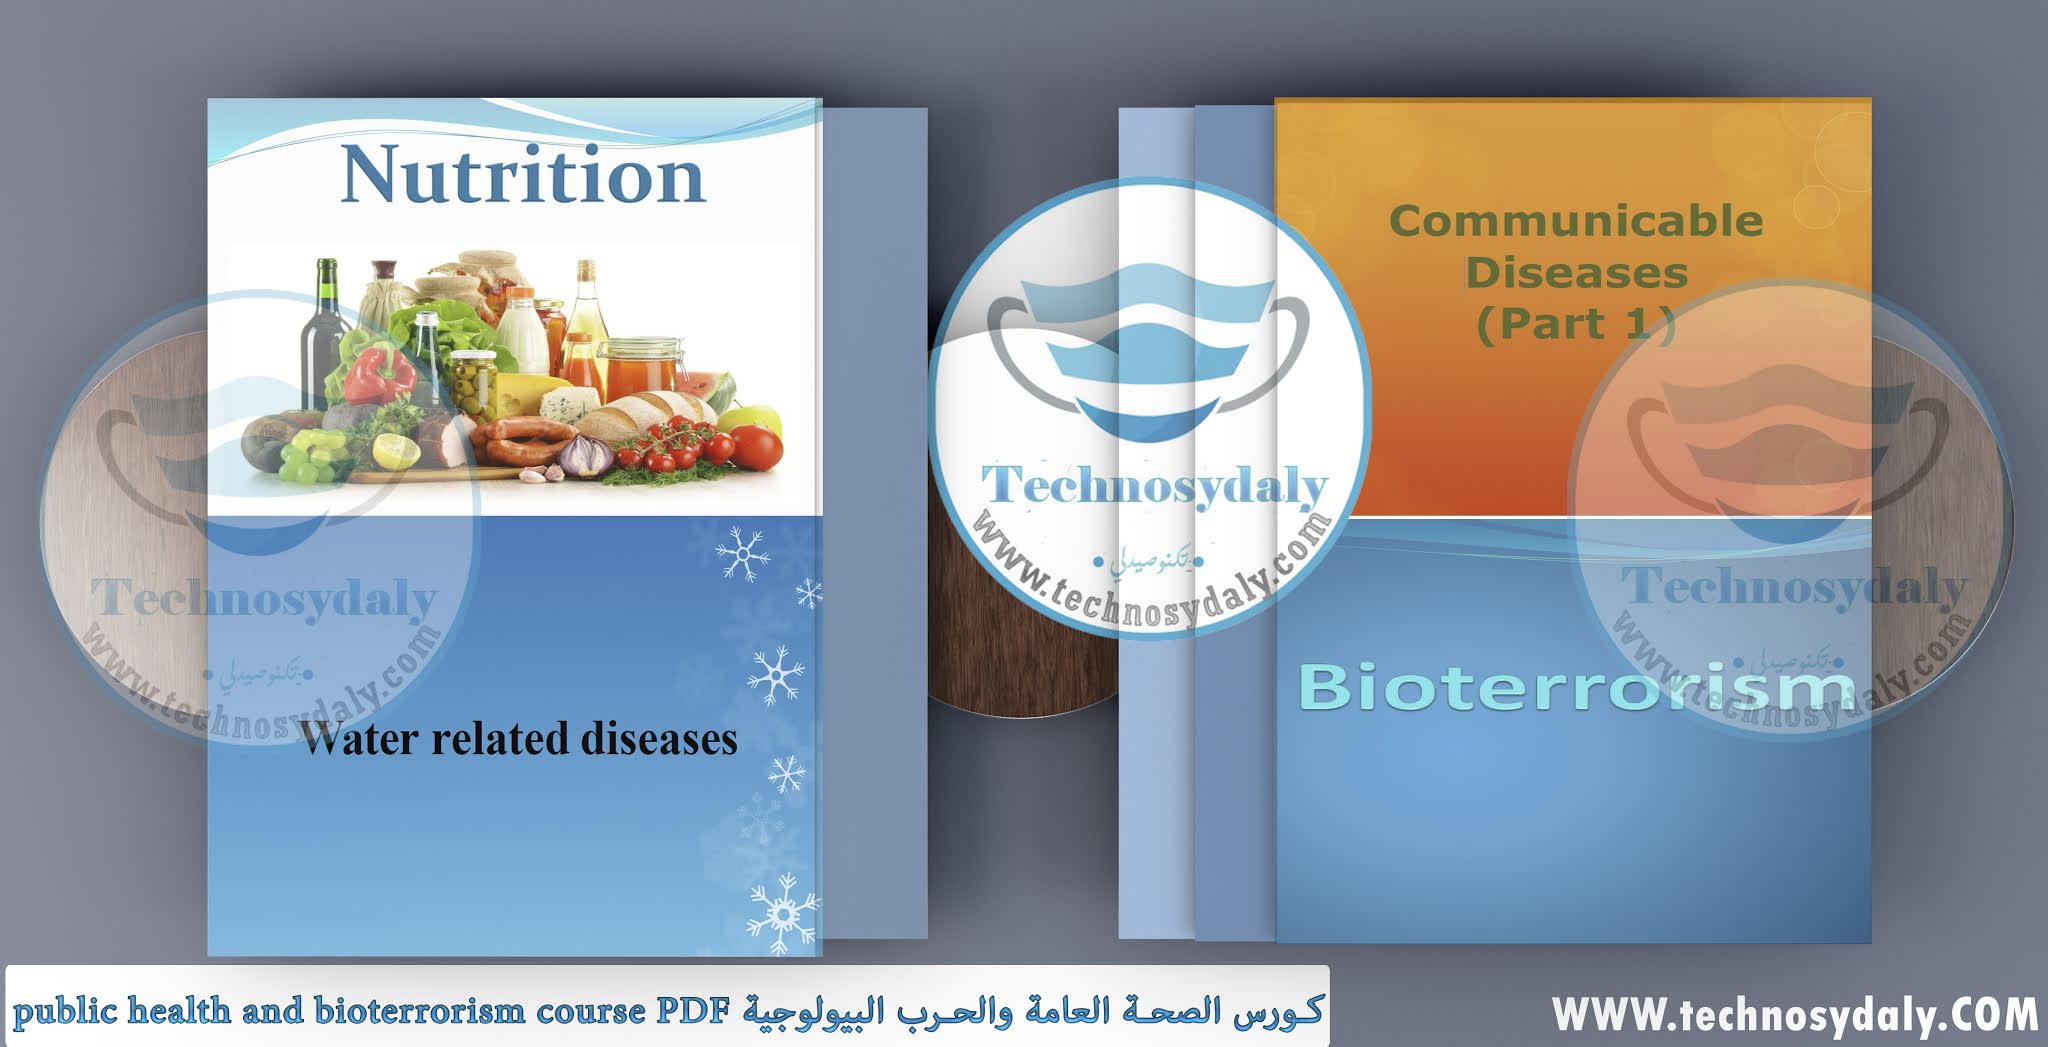 كورس الصحة العامة والحرب البيولوجية public health and bioterrorism course PDF